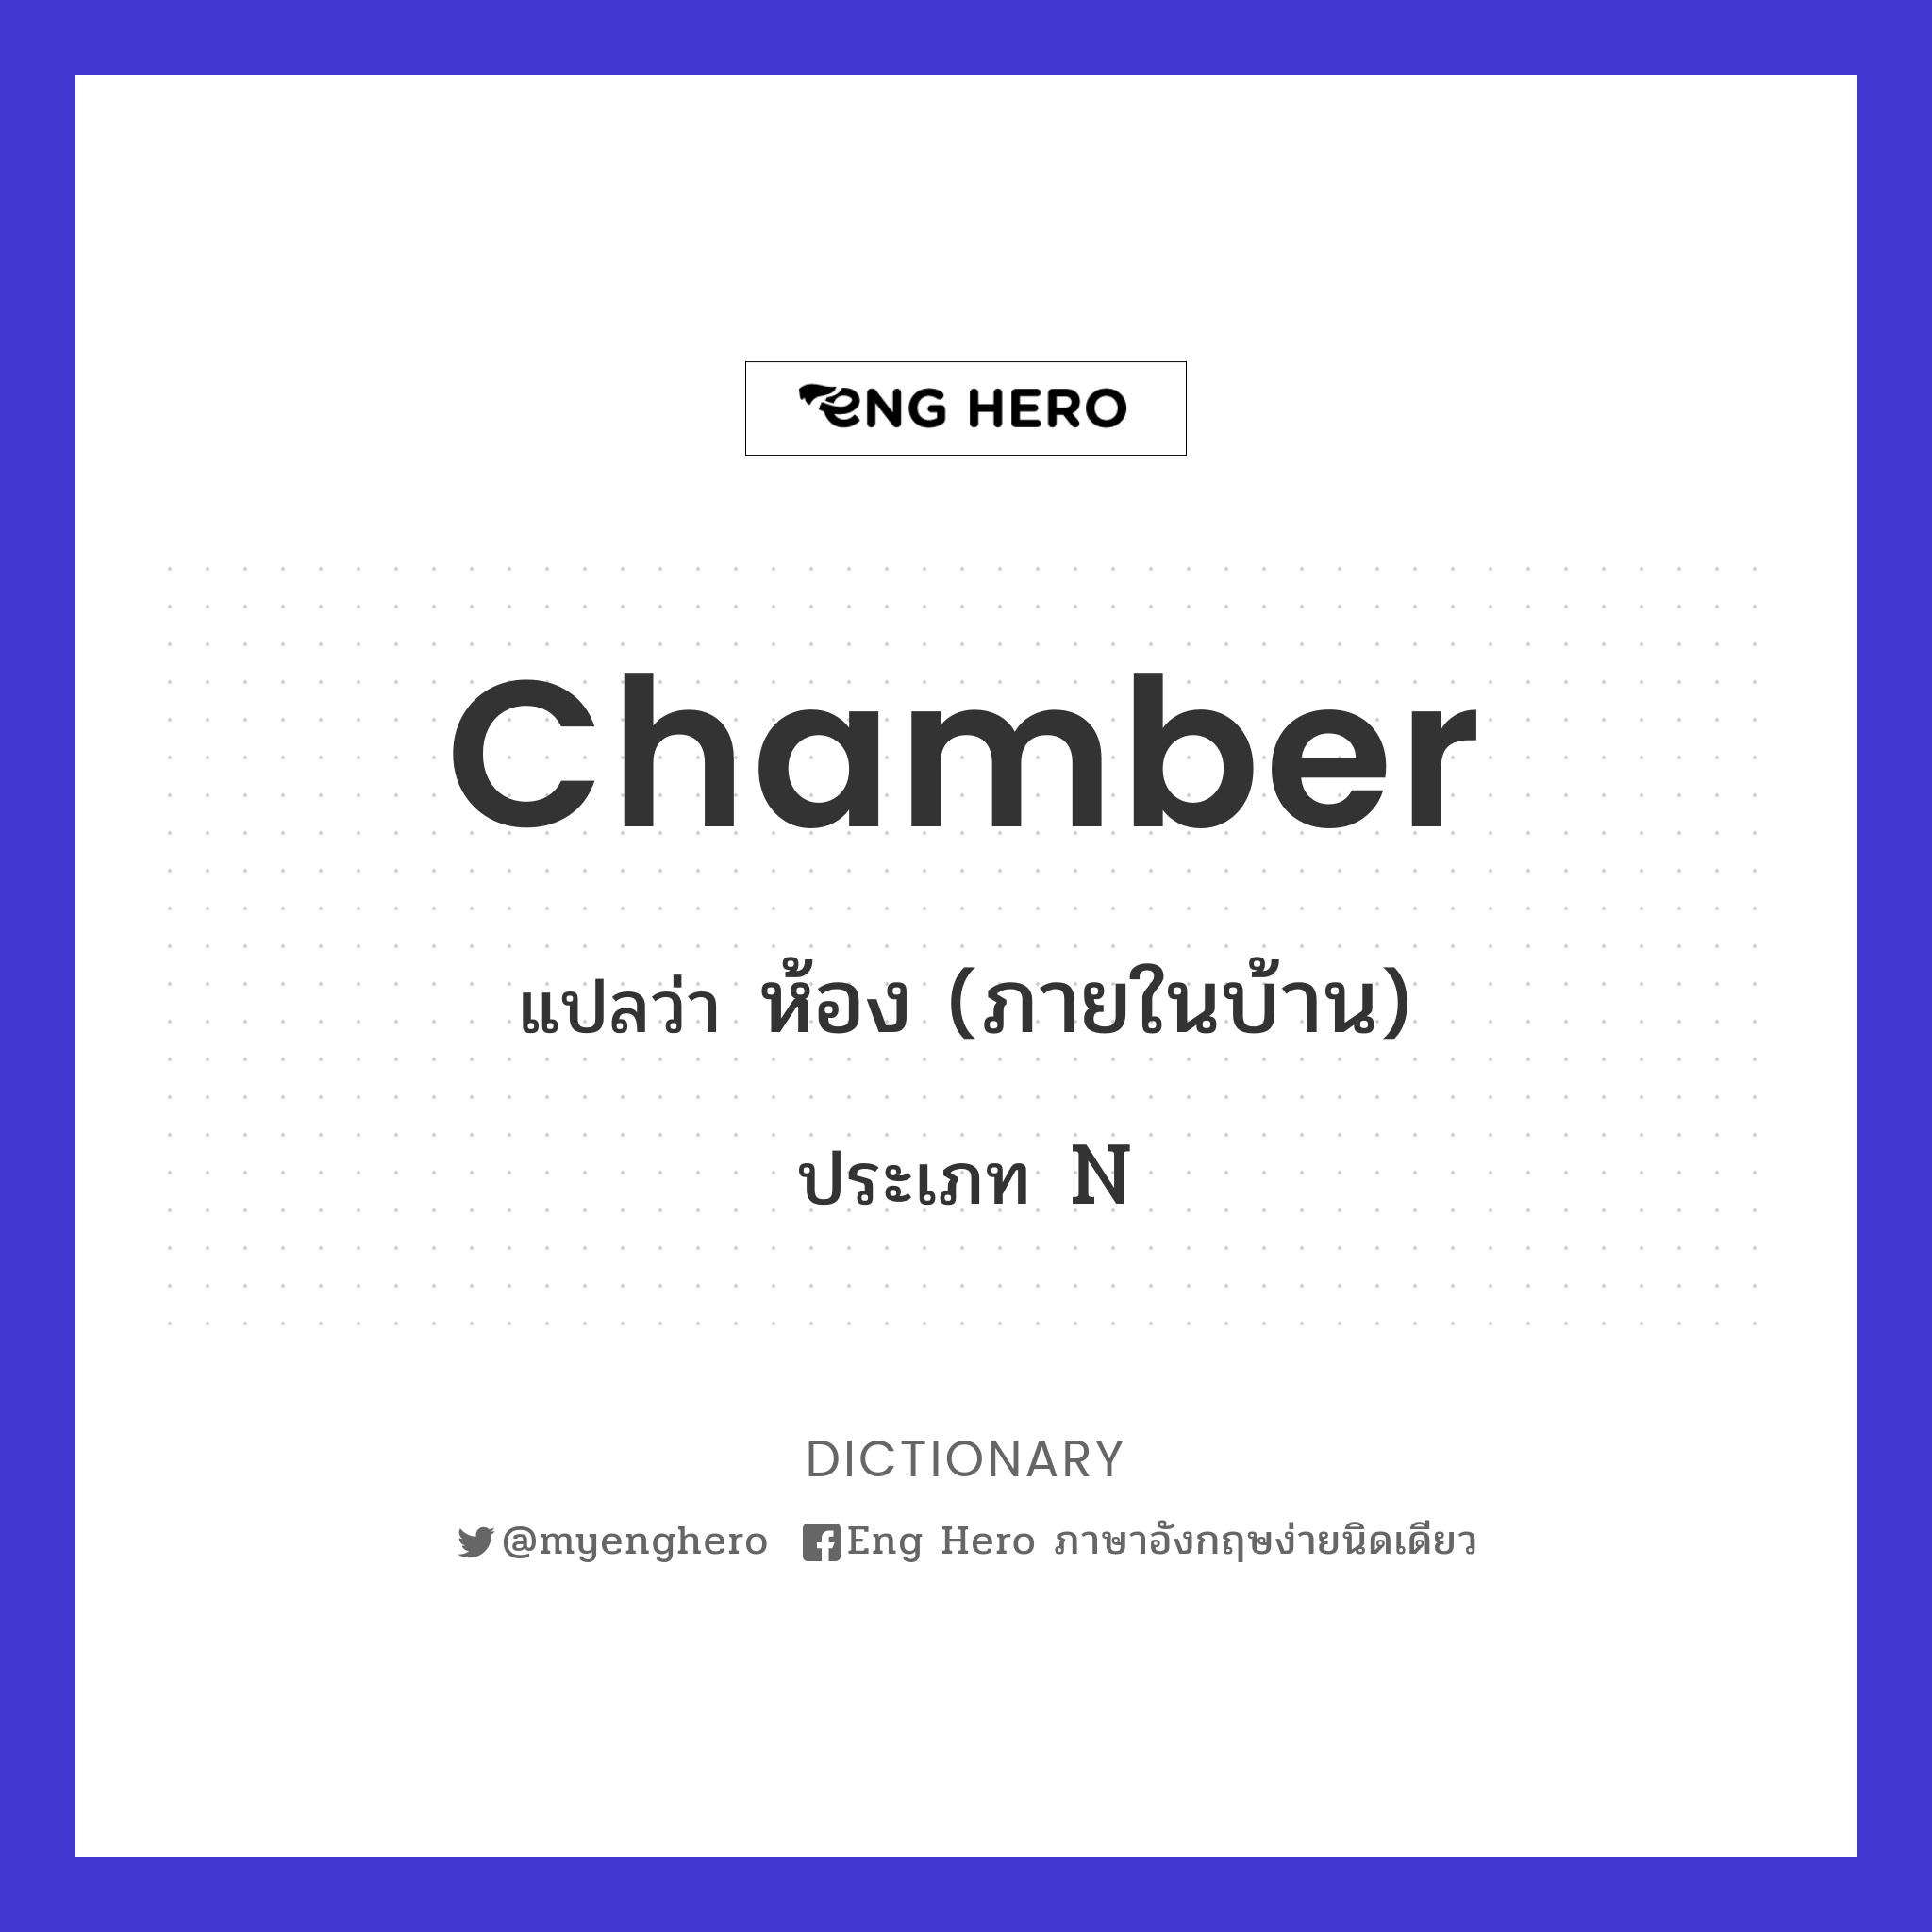 chamber